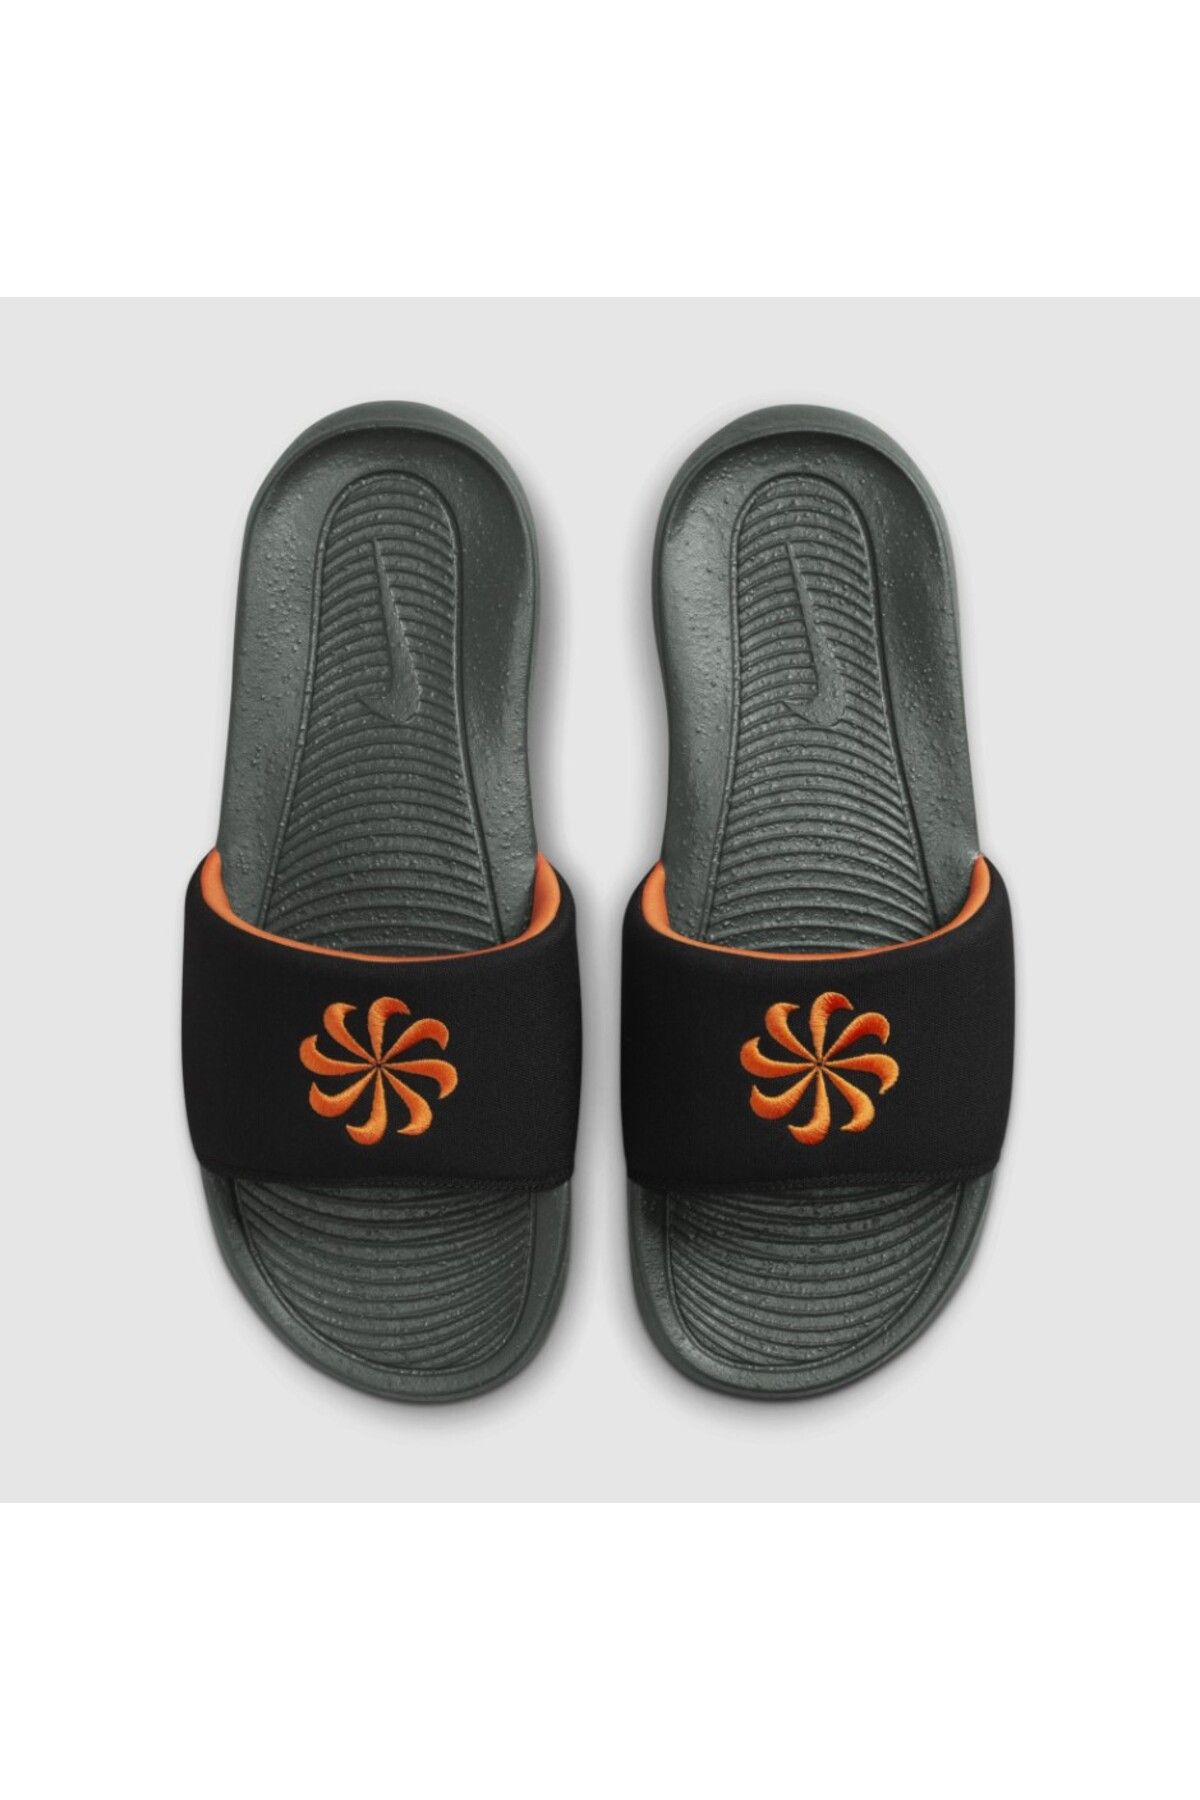 Nike Victori One Next Nature Men's Slides Siyah Terlik